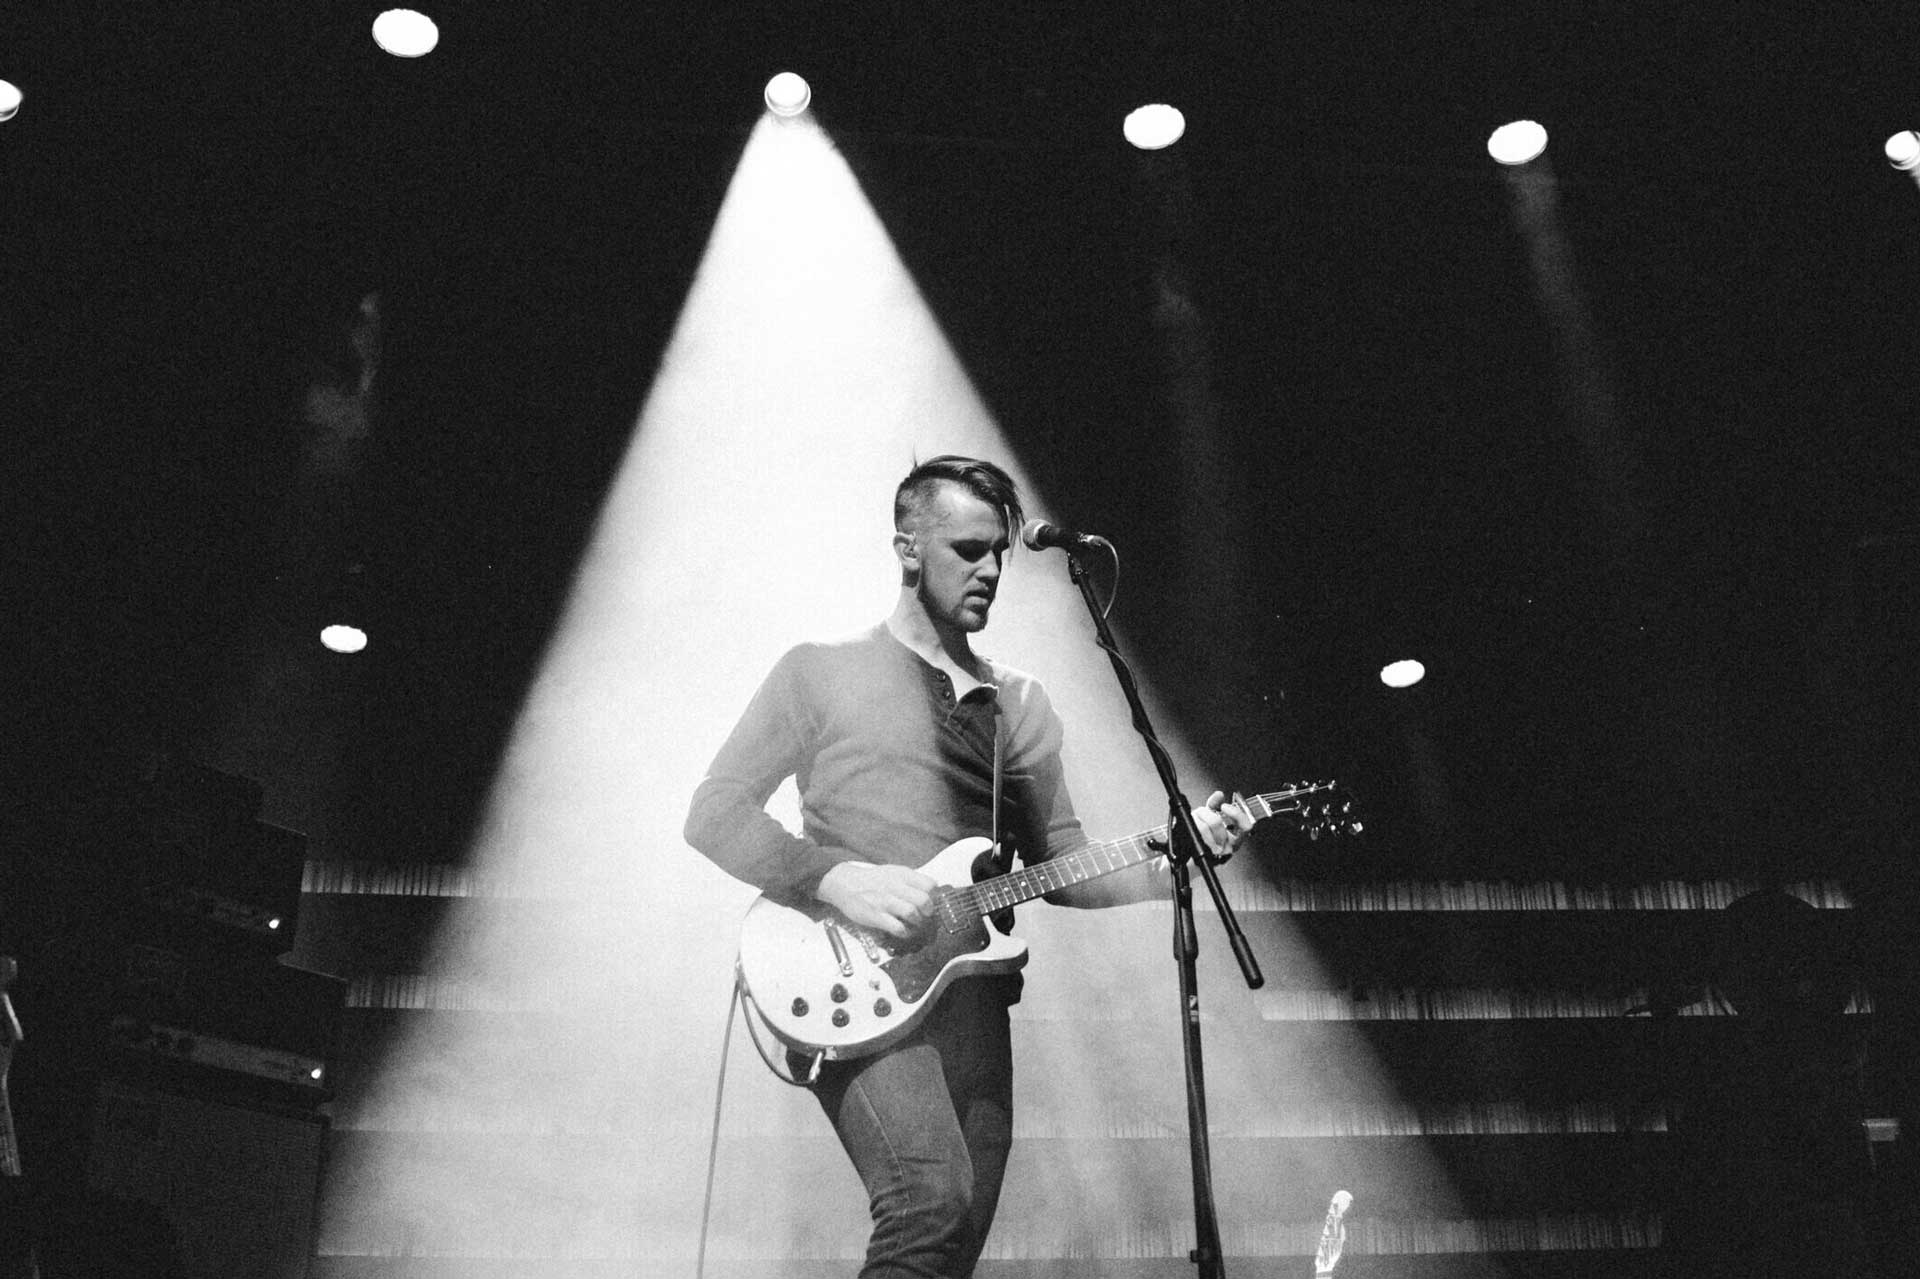 Der Musiker Peter Ferguson im Rampenlicht auf der Bühne mit einer Gitarre und einem Mikrofon.